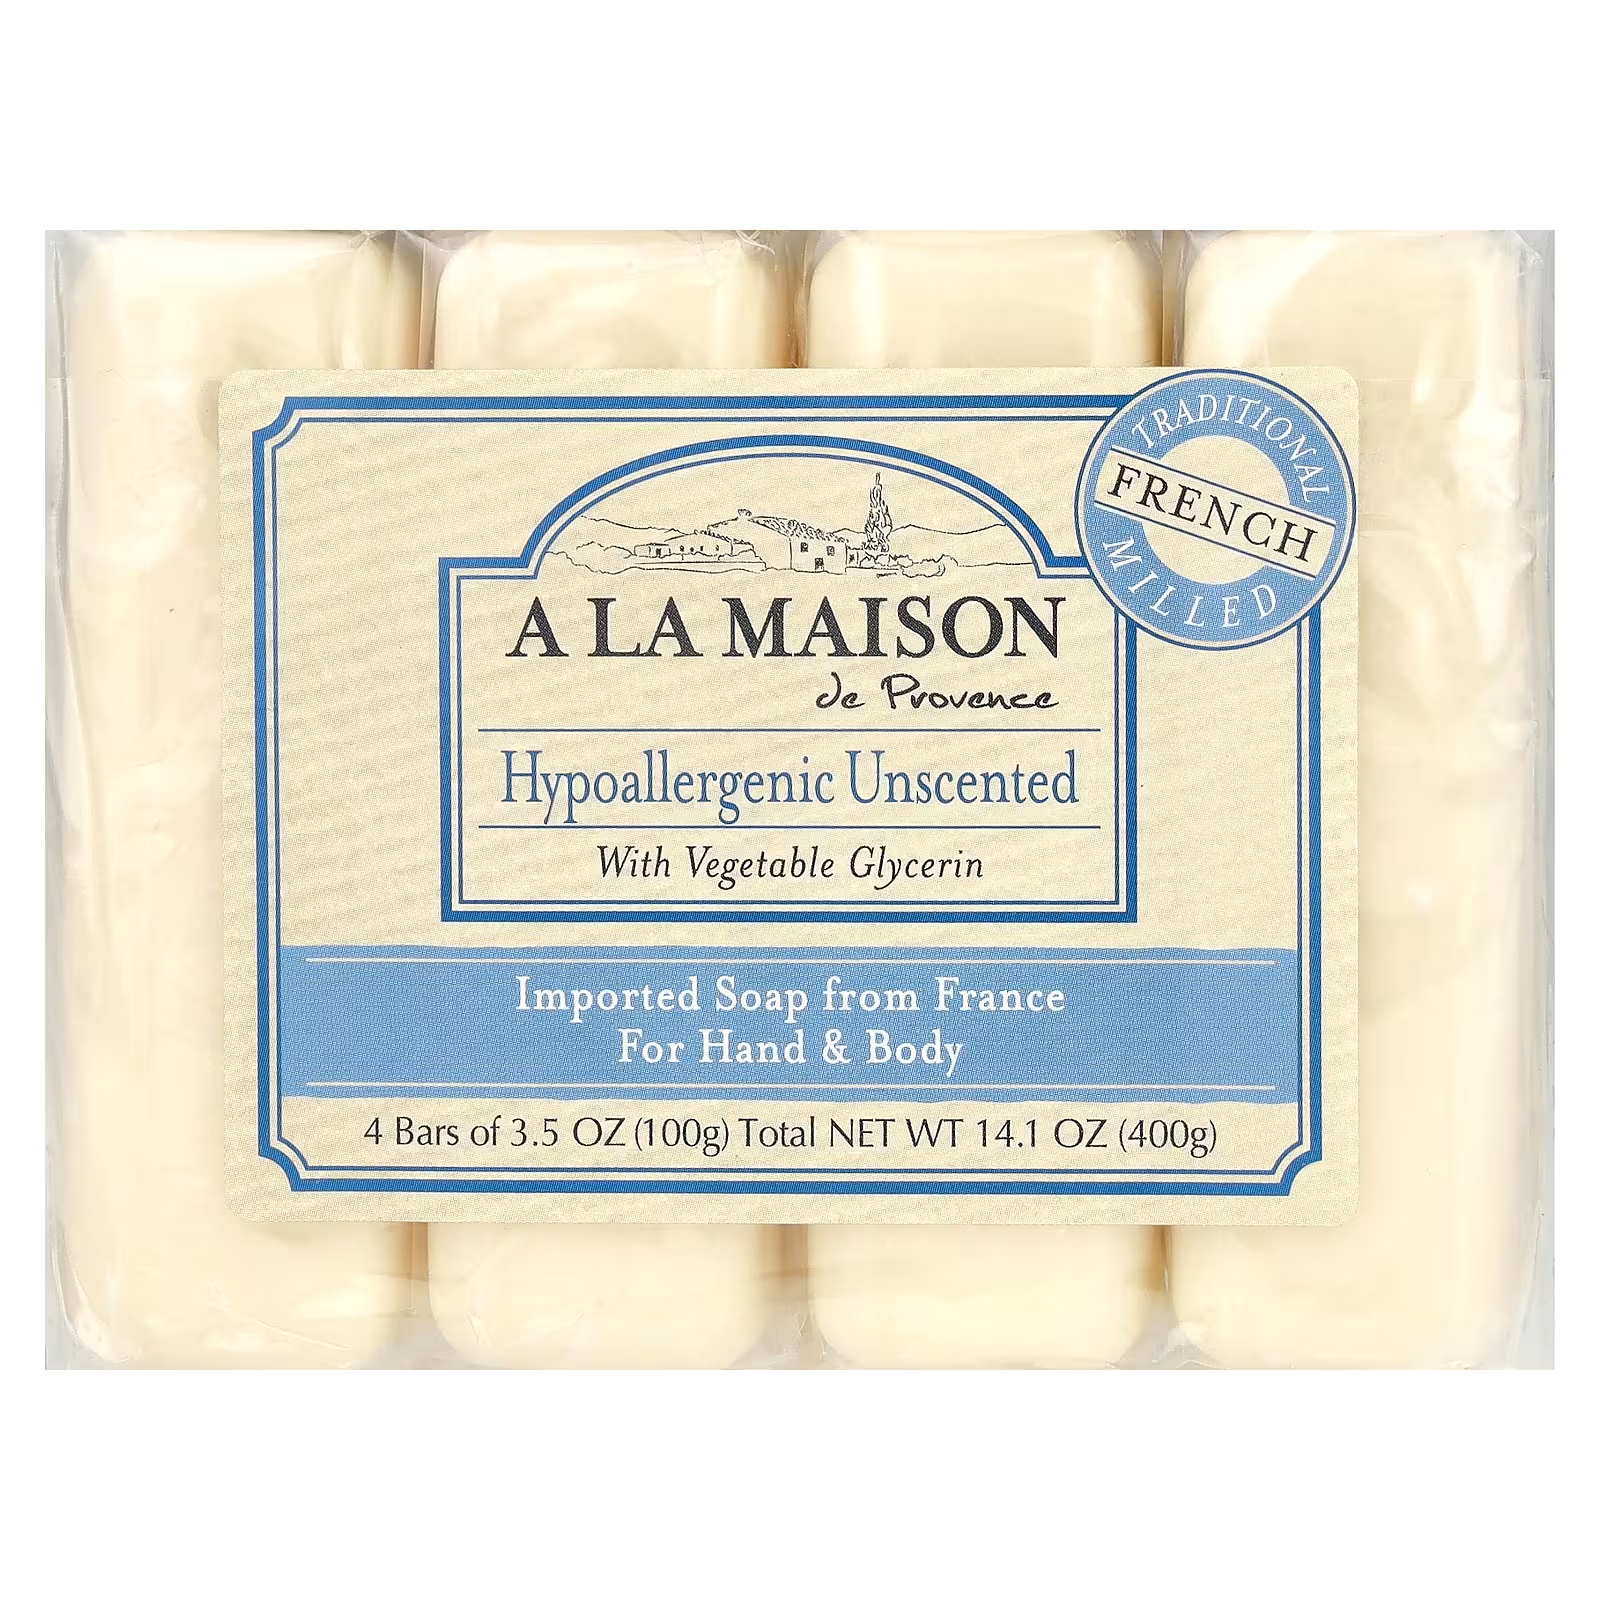 Мыло гипоаллергенное A La Maison de Provence для рук и тела, 4 куска по 100 г a la maison de provence мыло для рук и тела морская соль 4 бруска по 100 г 3 5 унции каждый